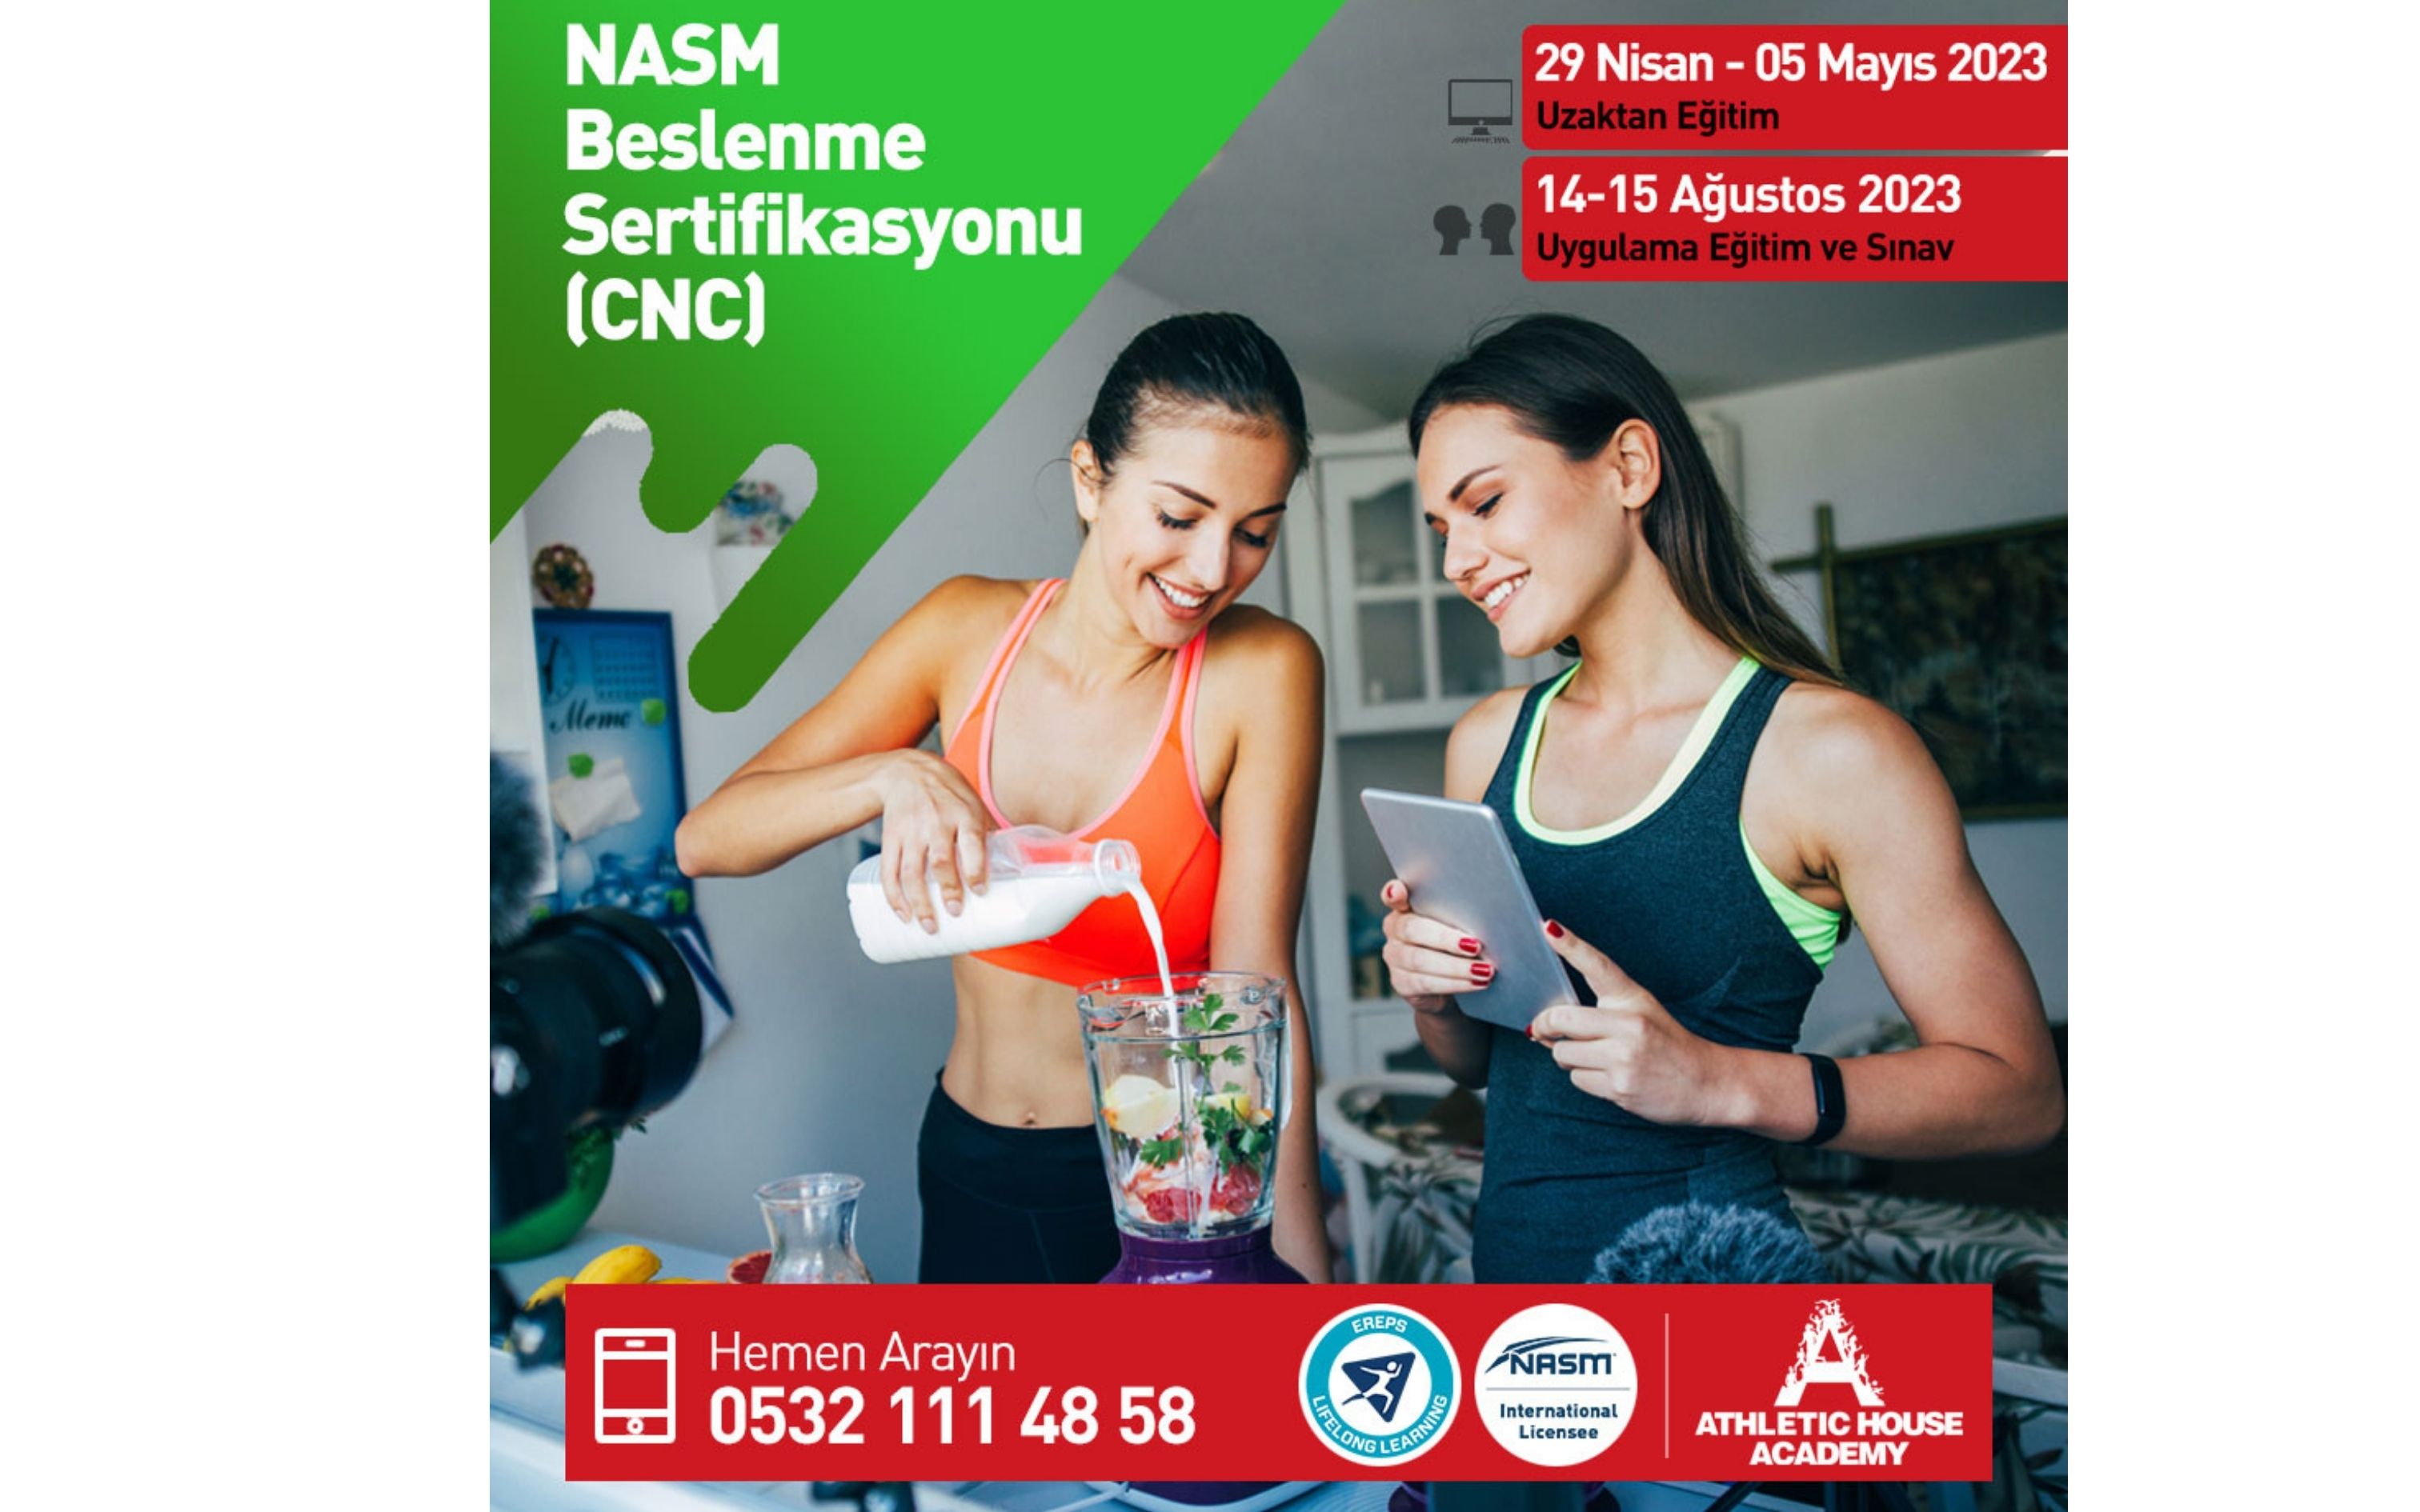 Beslenme Koçluğu (NASM-CNC)